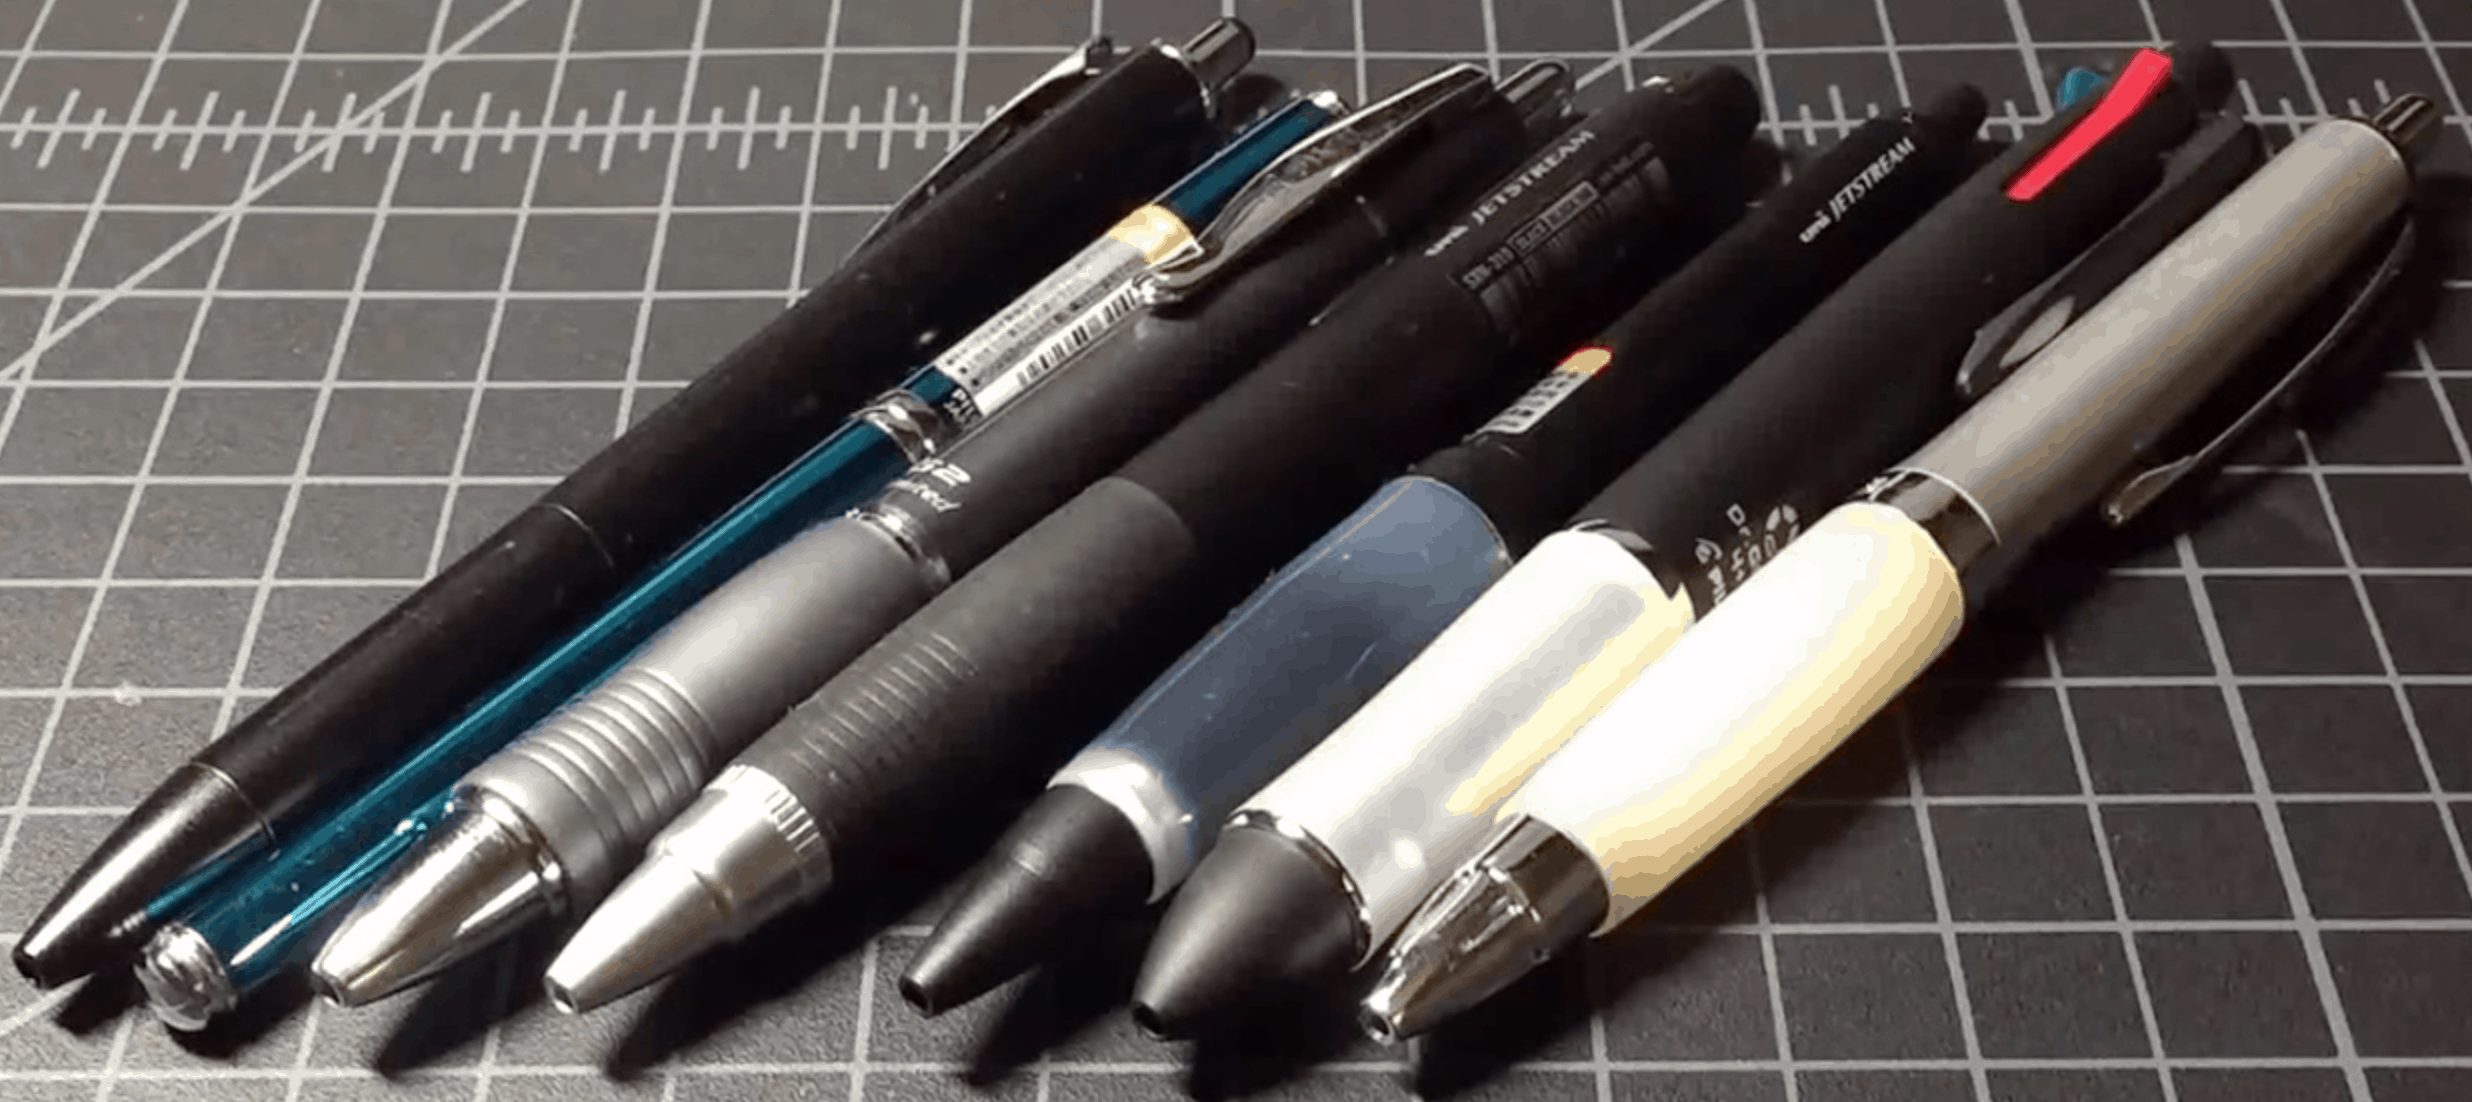 Premium Japanese Pens